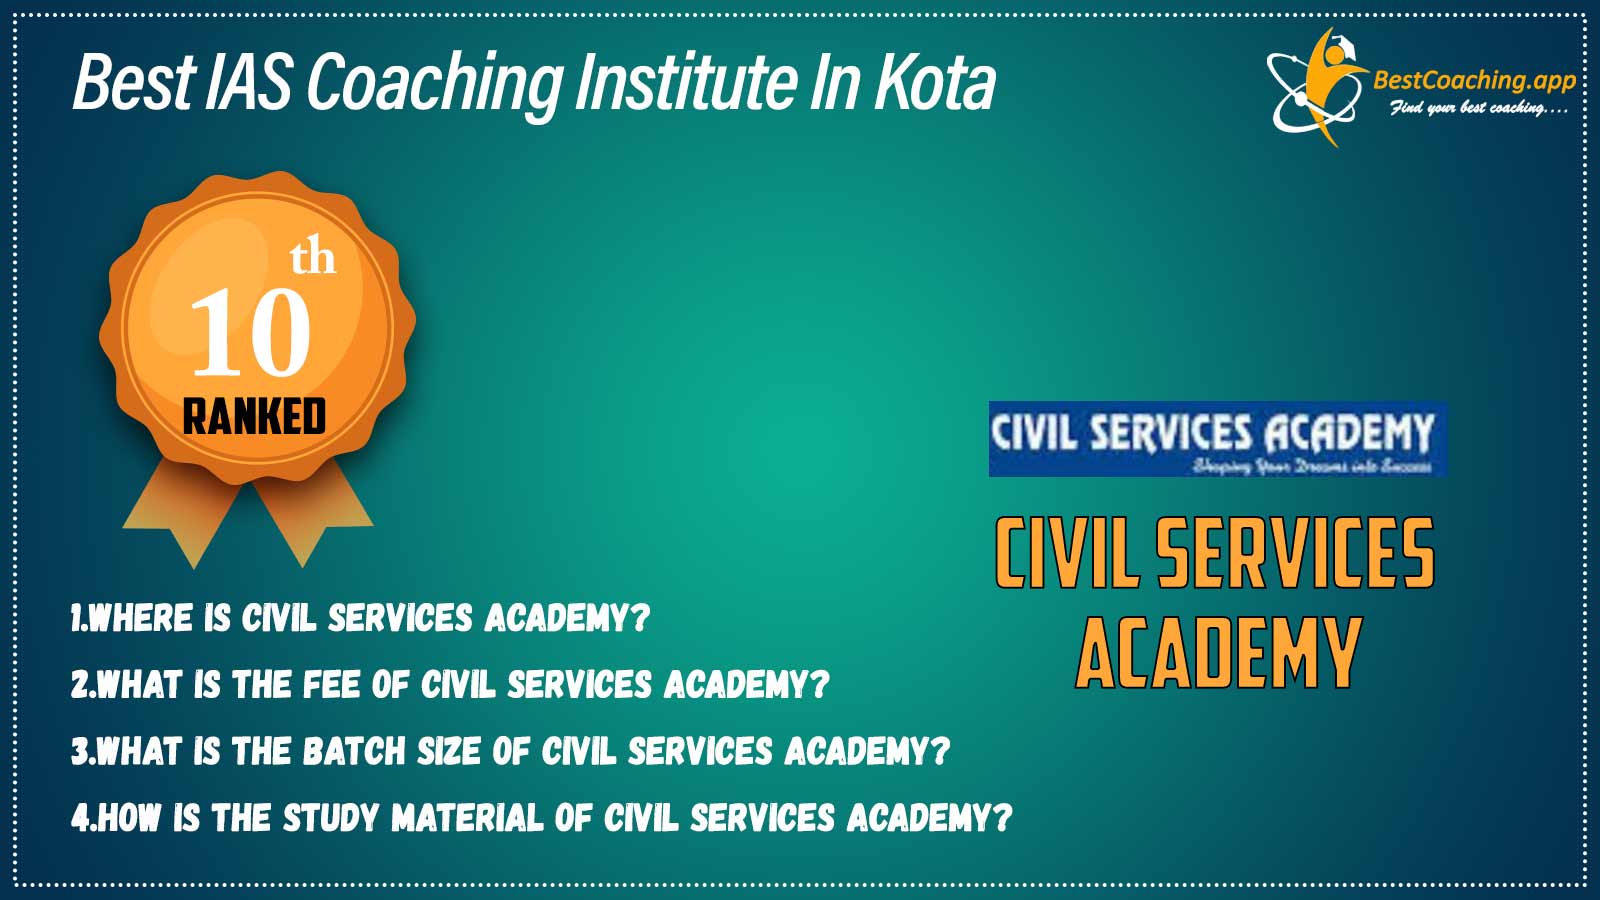 Top IAS Coaching Institute in Kota